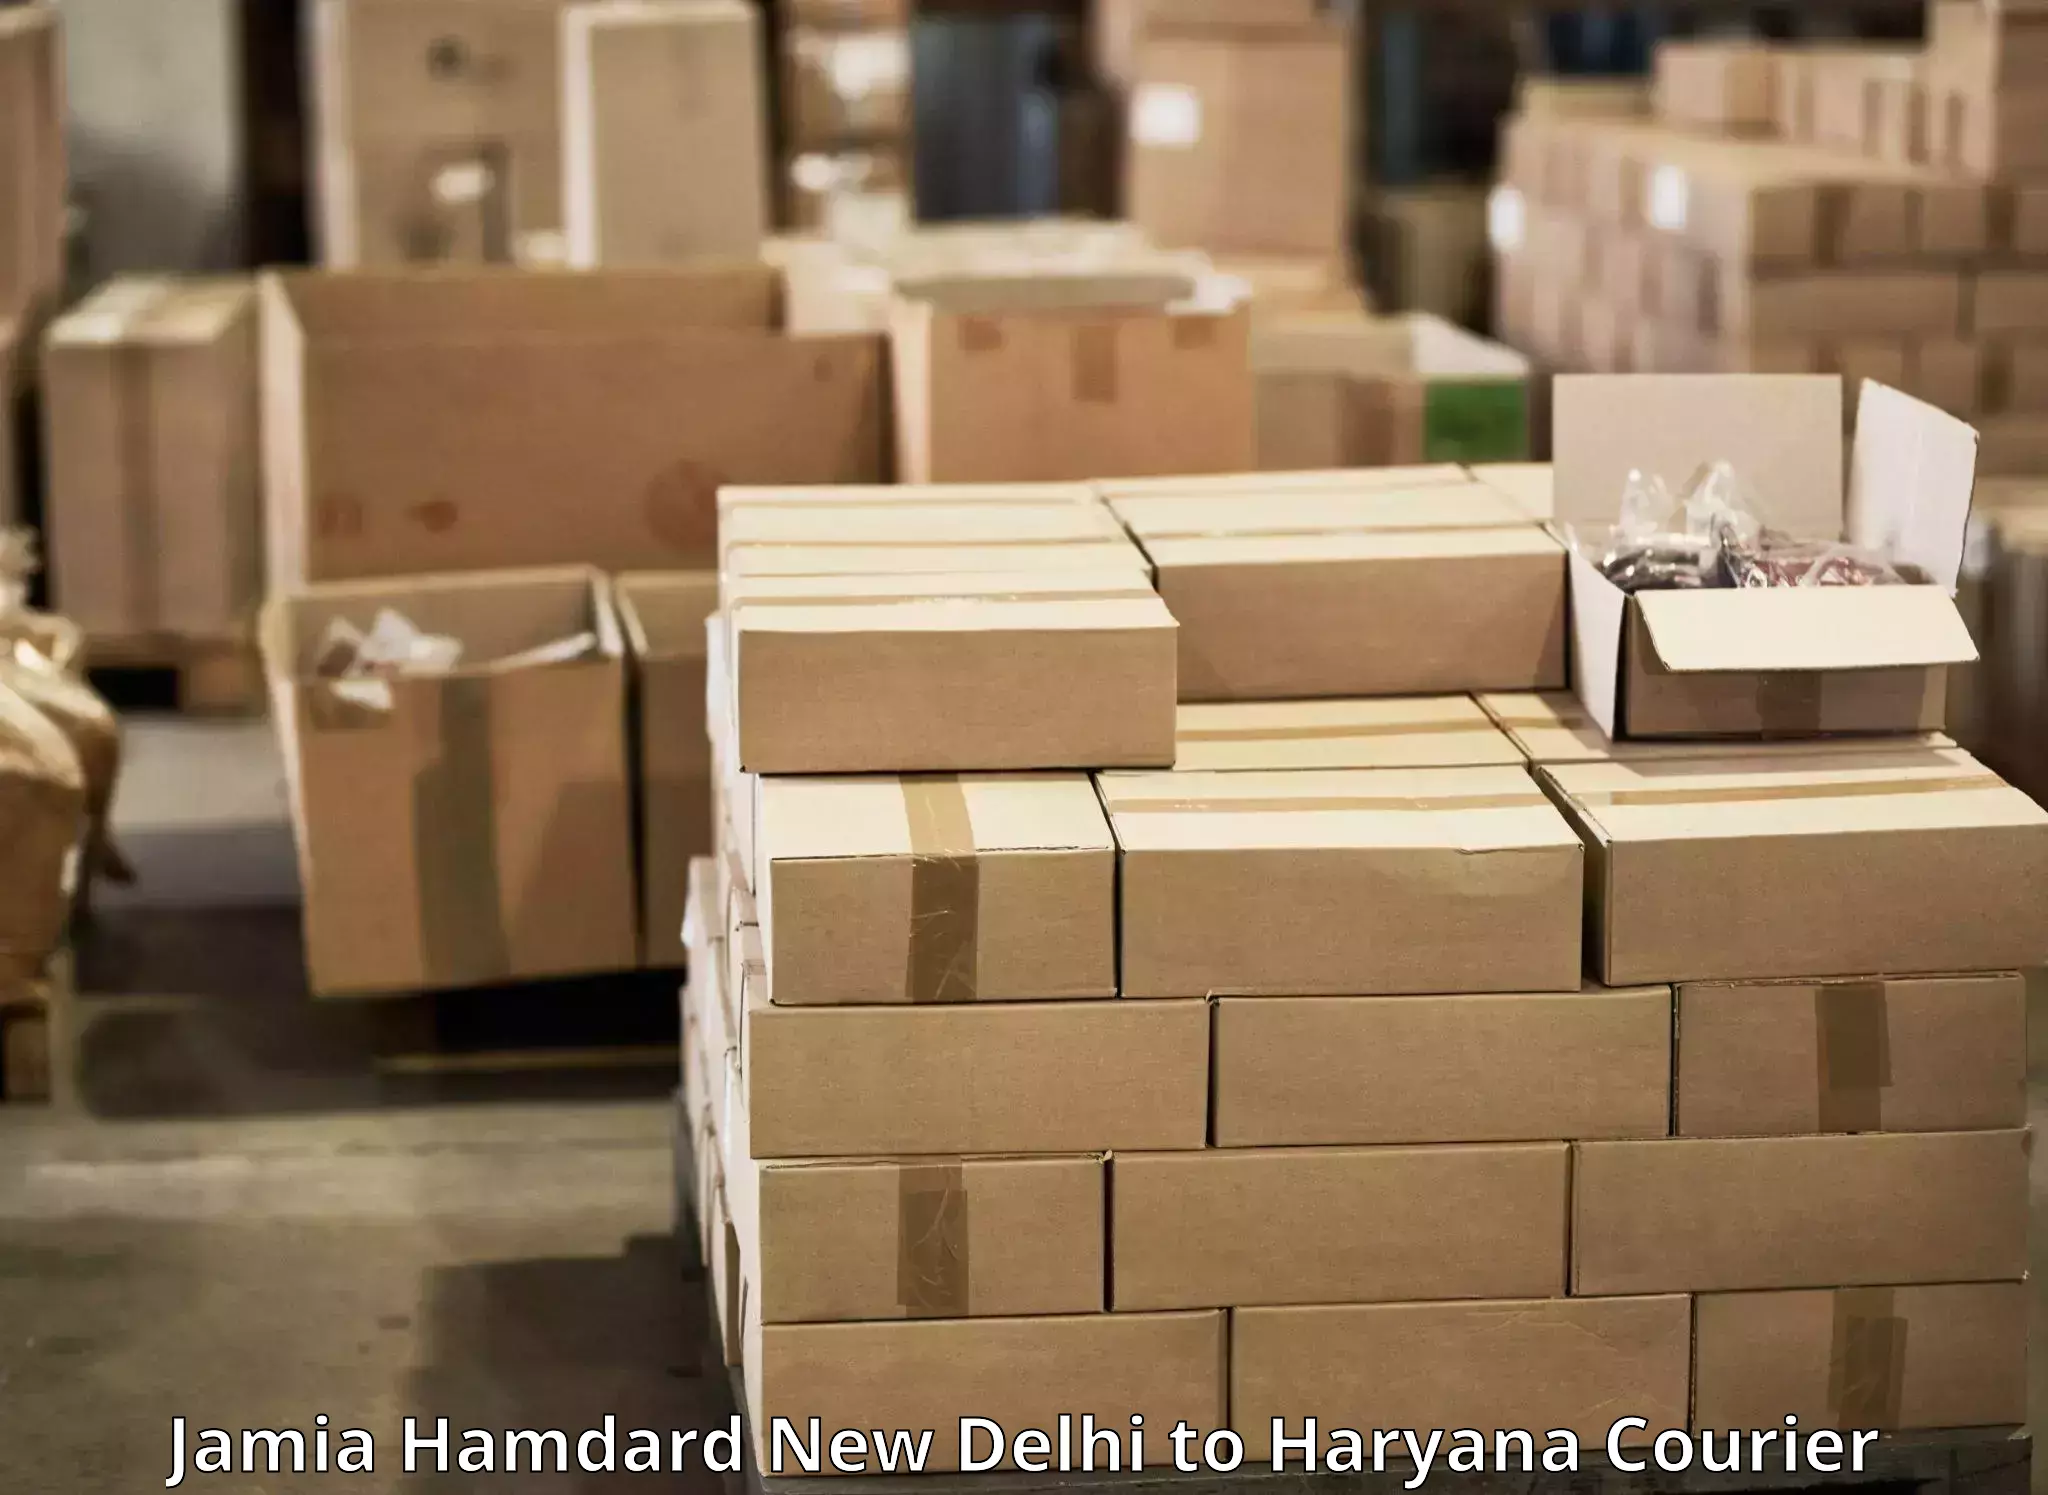 Courier service comparison Jamia Hamdard New Delhi to Dharuhera